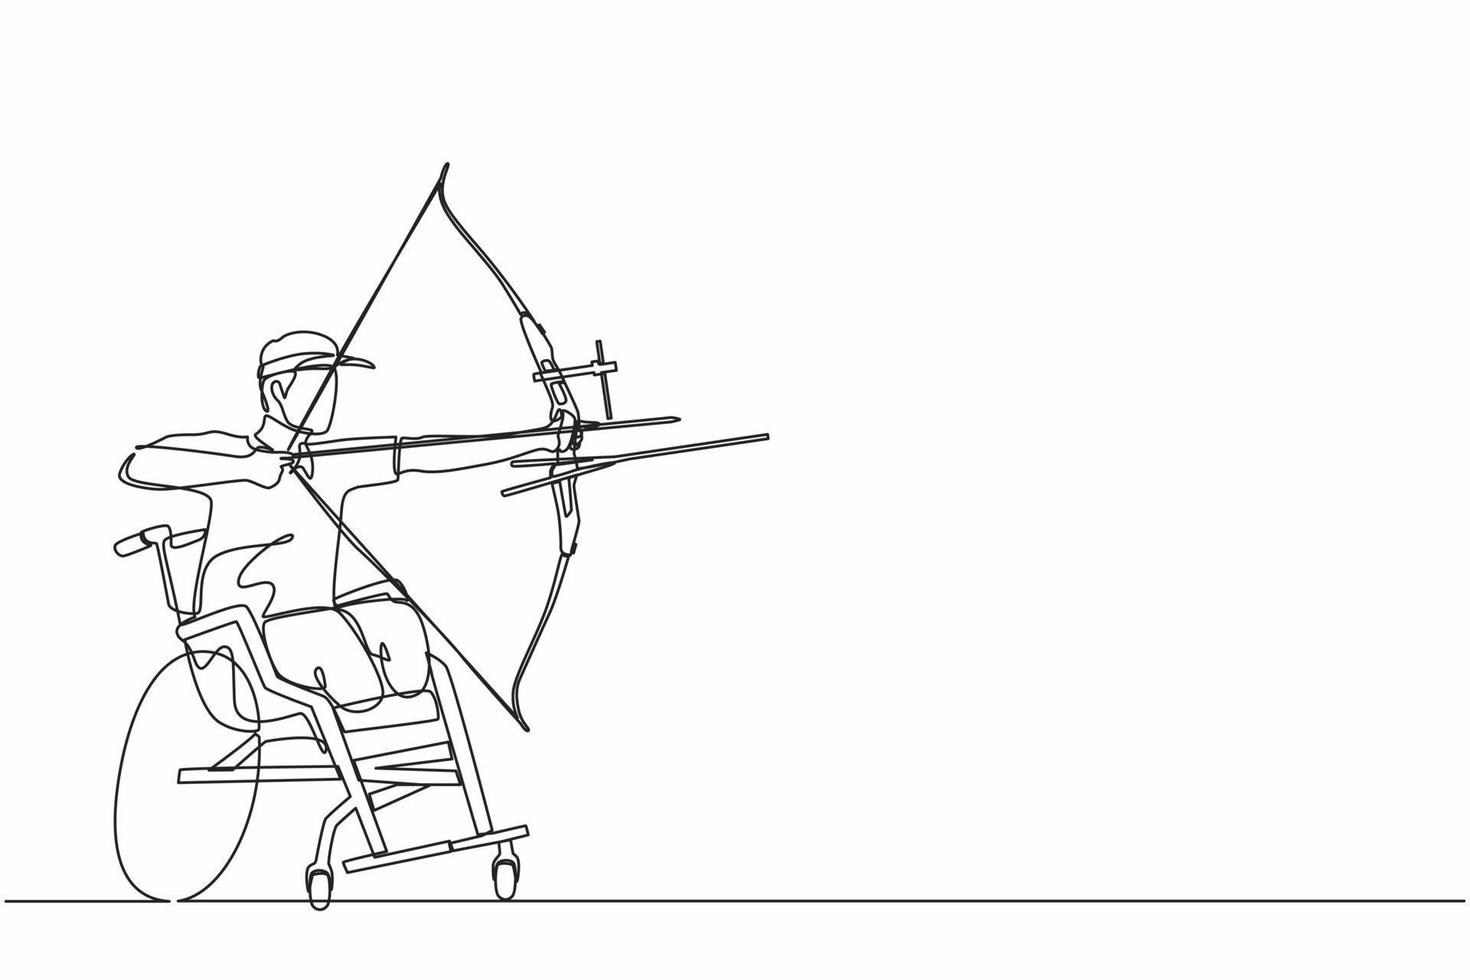 dessin continu d'une ligne archer handicapé athlète masculin visant avec un arc de sport. équipement de sport de tir à l'arc pour les athlètes. archer handicapé visant une flèche. graphique vectoriel de conception de dessin à une seule ligne